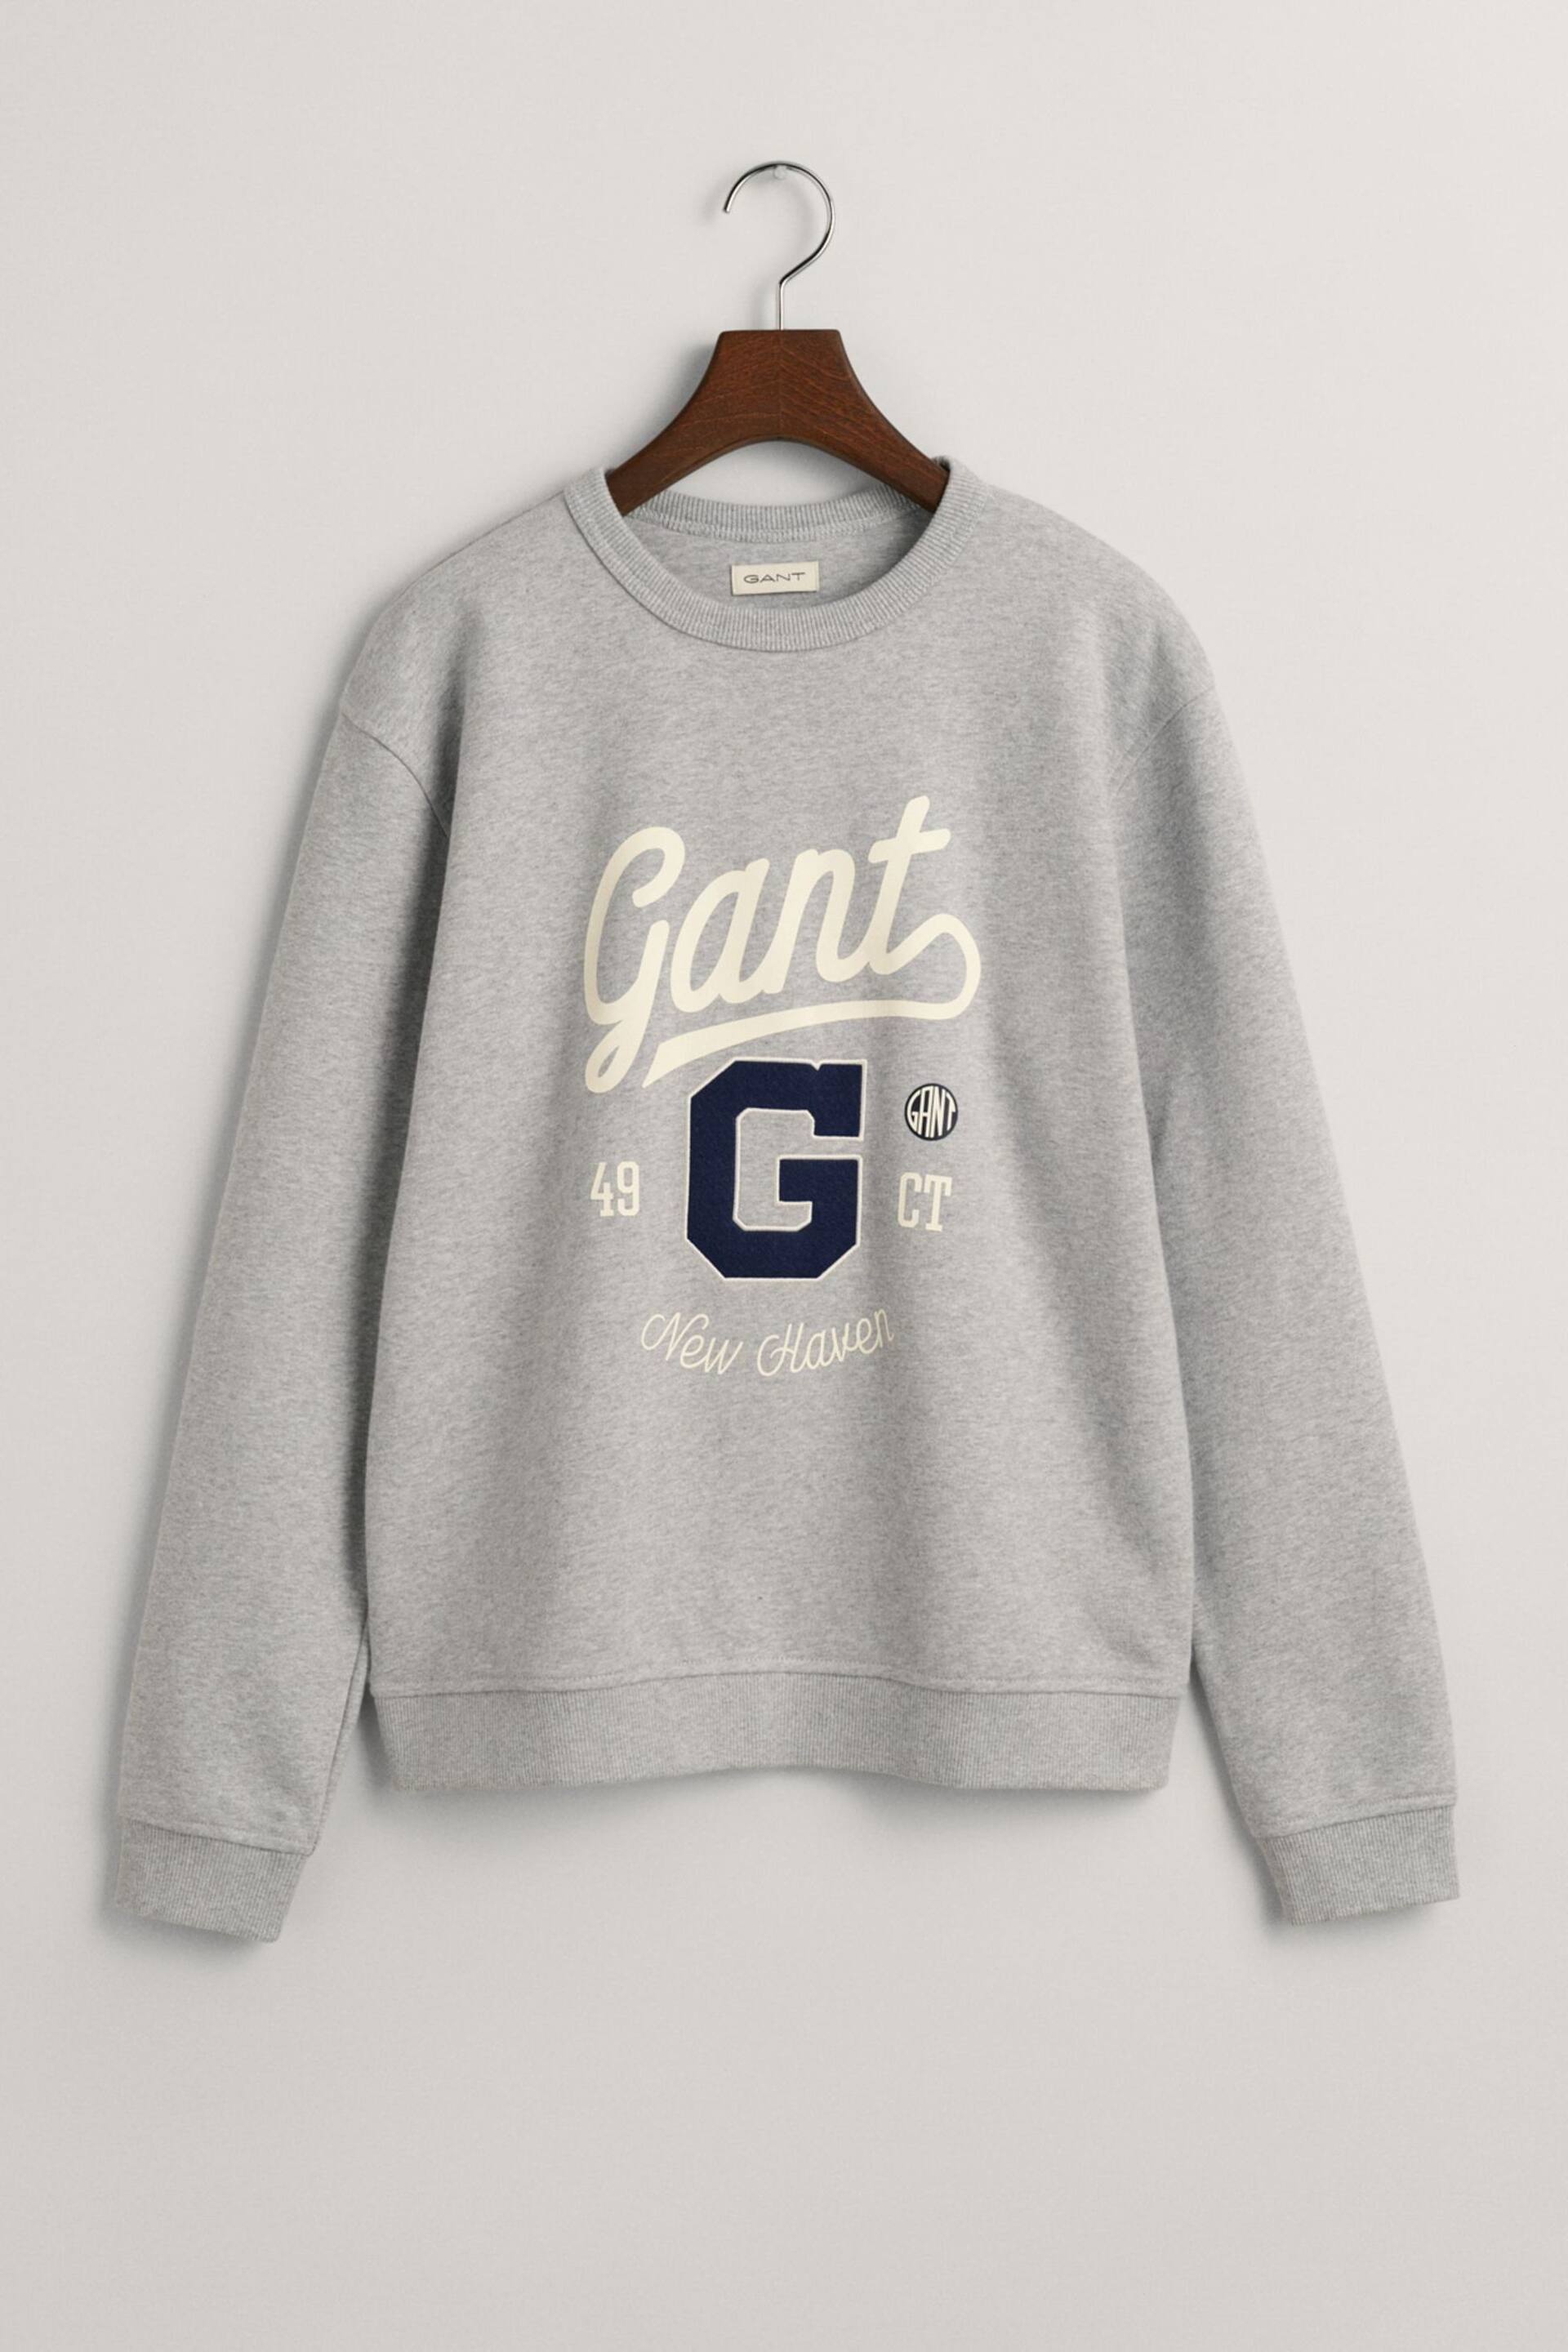 GANT Teens Grey Graphic Crew Neck Sweatshirt - Image 6 of 6